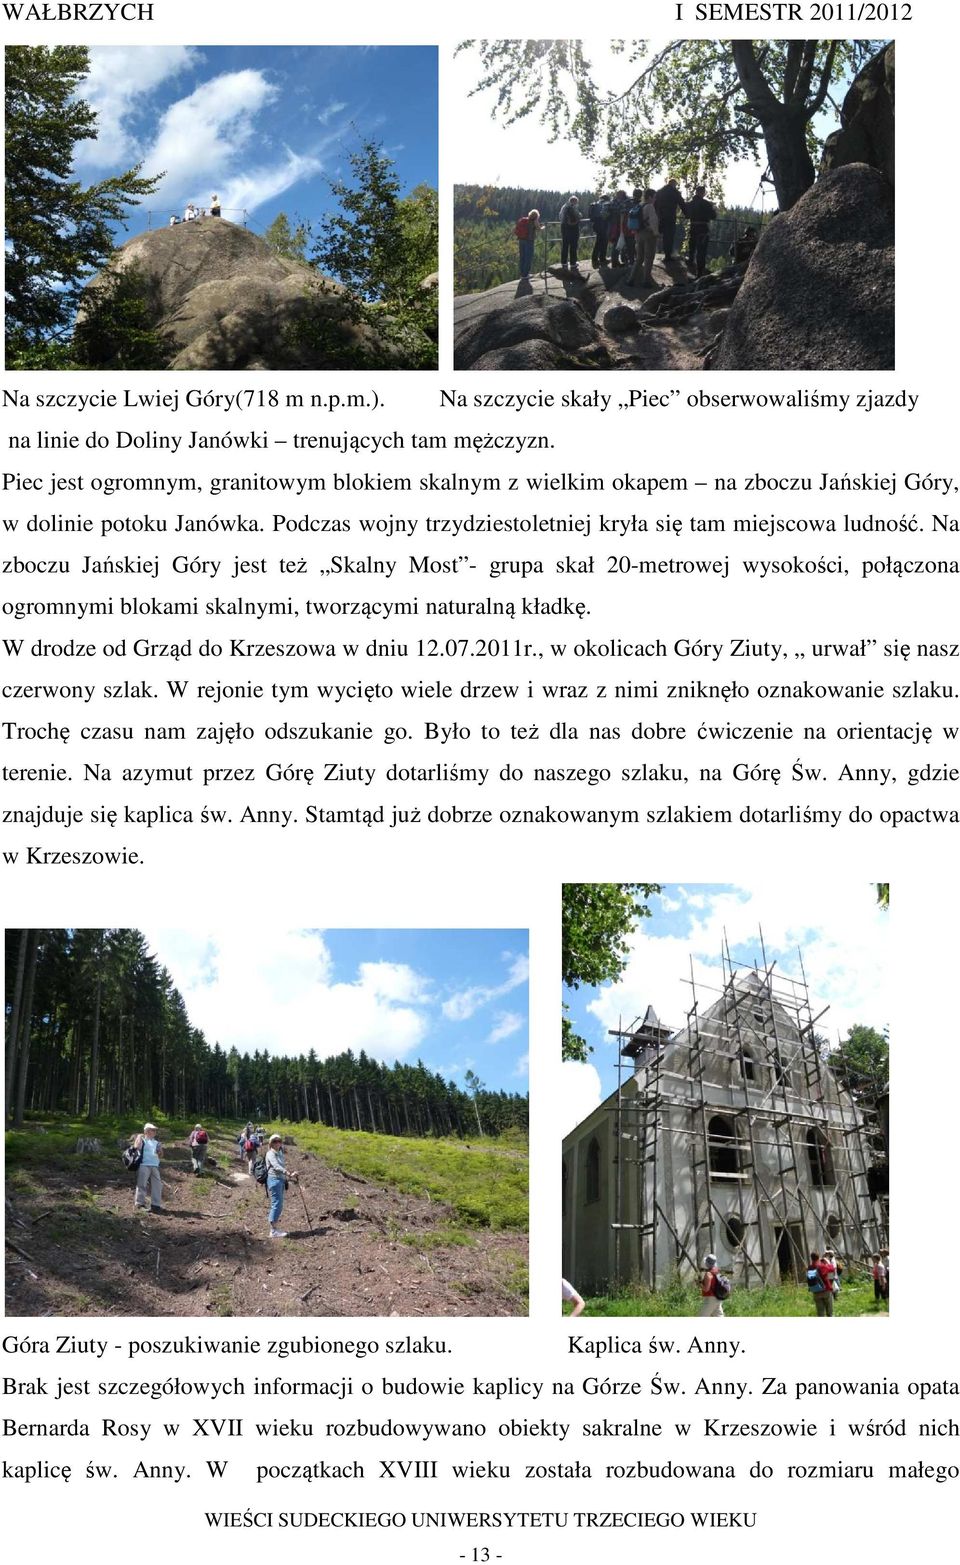 Na zboczu Jańskiej Góry jest też Skalny Most - grupa skał 20-metrowej wysokości, połączona ogromnymi blokami skalnymi, tworzącymi naturalną kładkę. W drodze od Grząd do Krzeszowa w dniu 12.07.2011r.